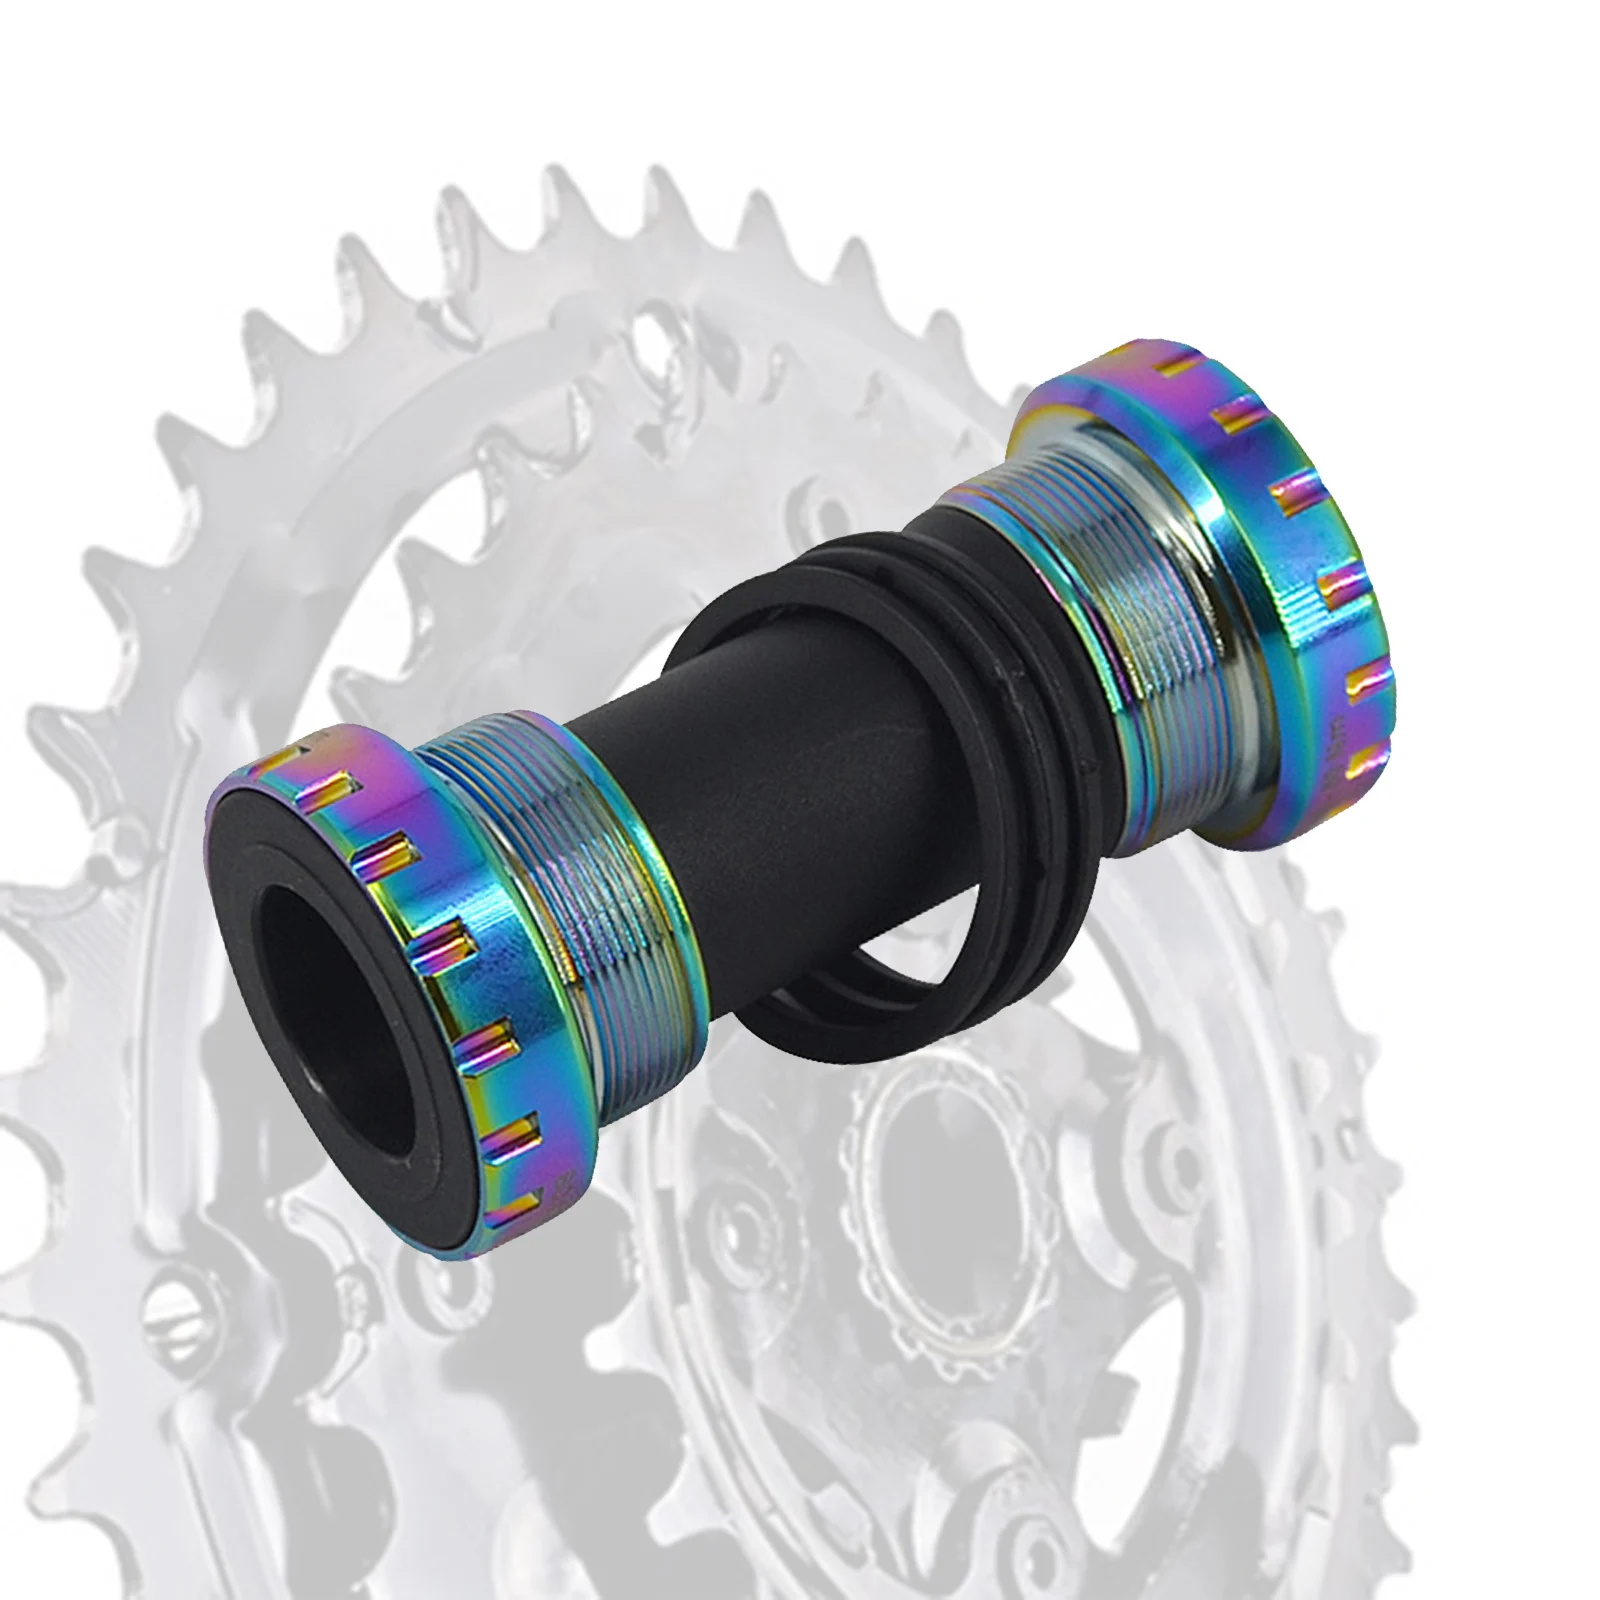 Ultralight Bike Bottom Bracket MTB Road Bike Threaded Crankset Sealed Bearings BB01 for 68-73mm Bottom Bracket Shell Component